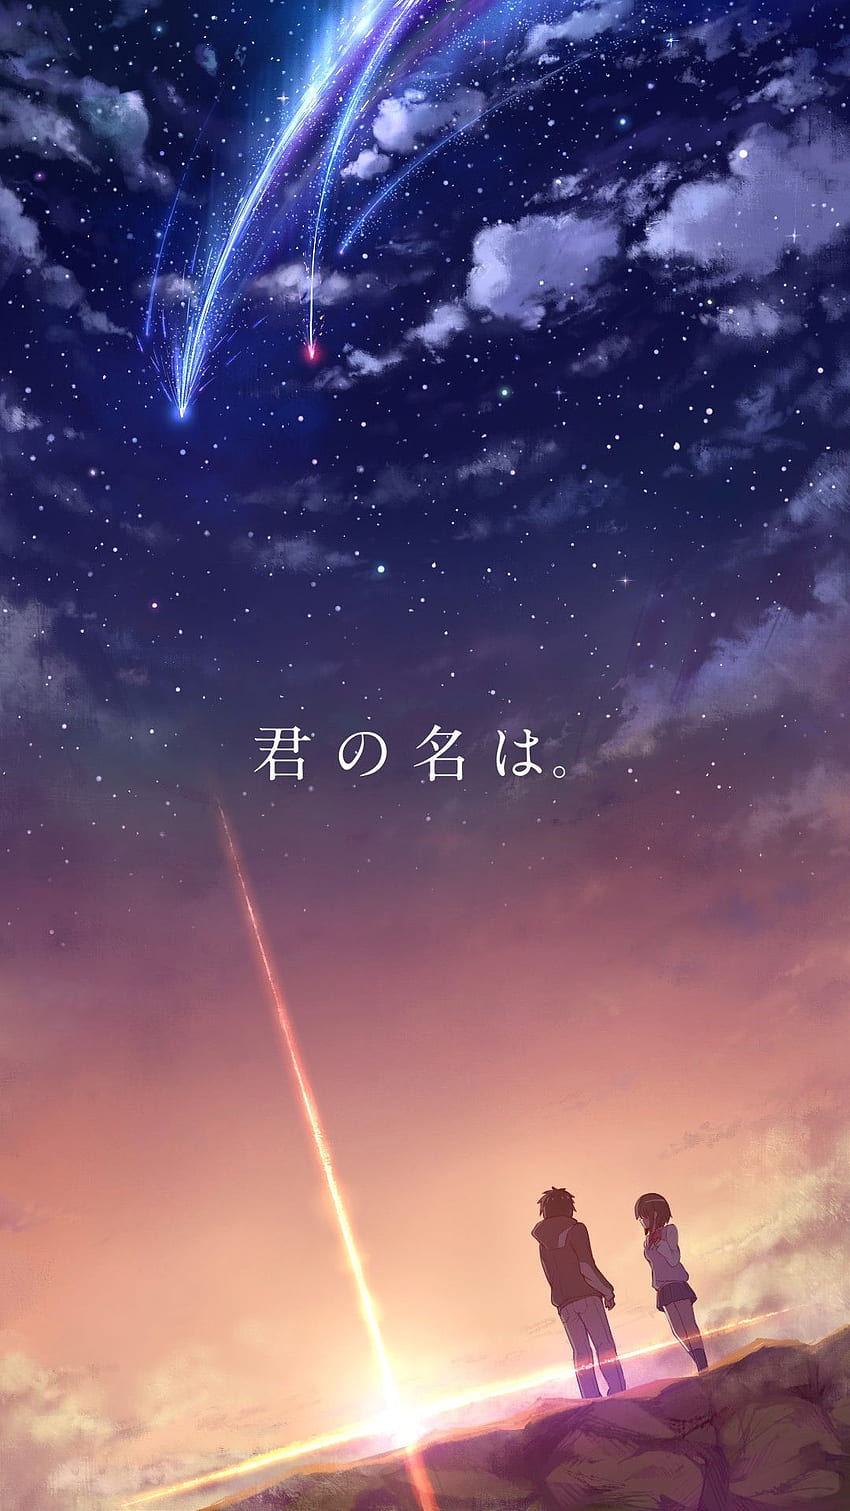 iPhone 8 Anime Inspirational - Tu nombre en vivo, Anime iPhone 8 fondo de pantalla del teléfono